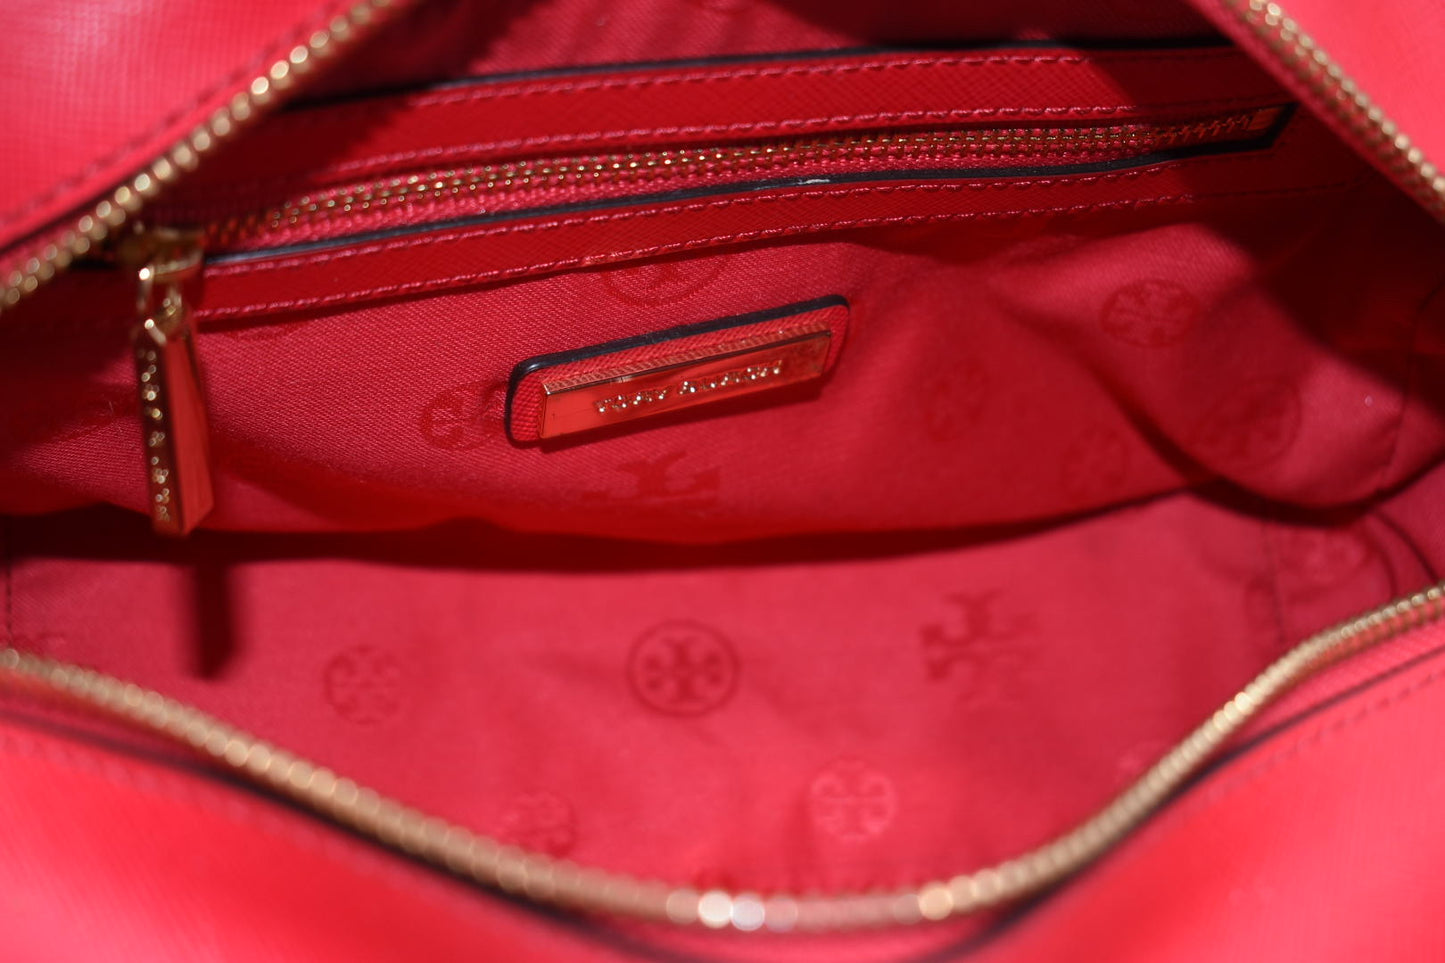 Tory Burch Mini Square Robinson Tote Bag in Red Saffiano